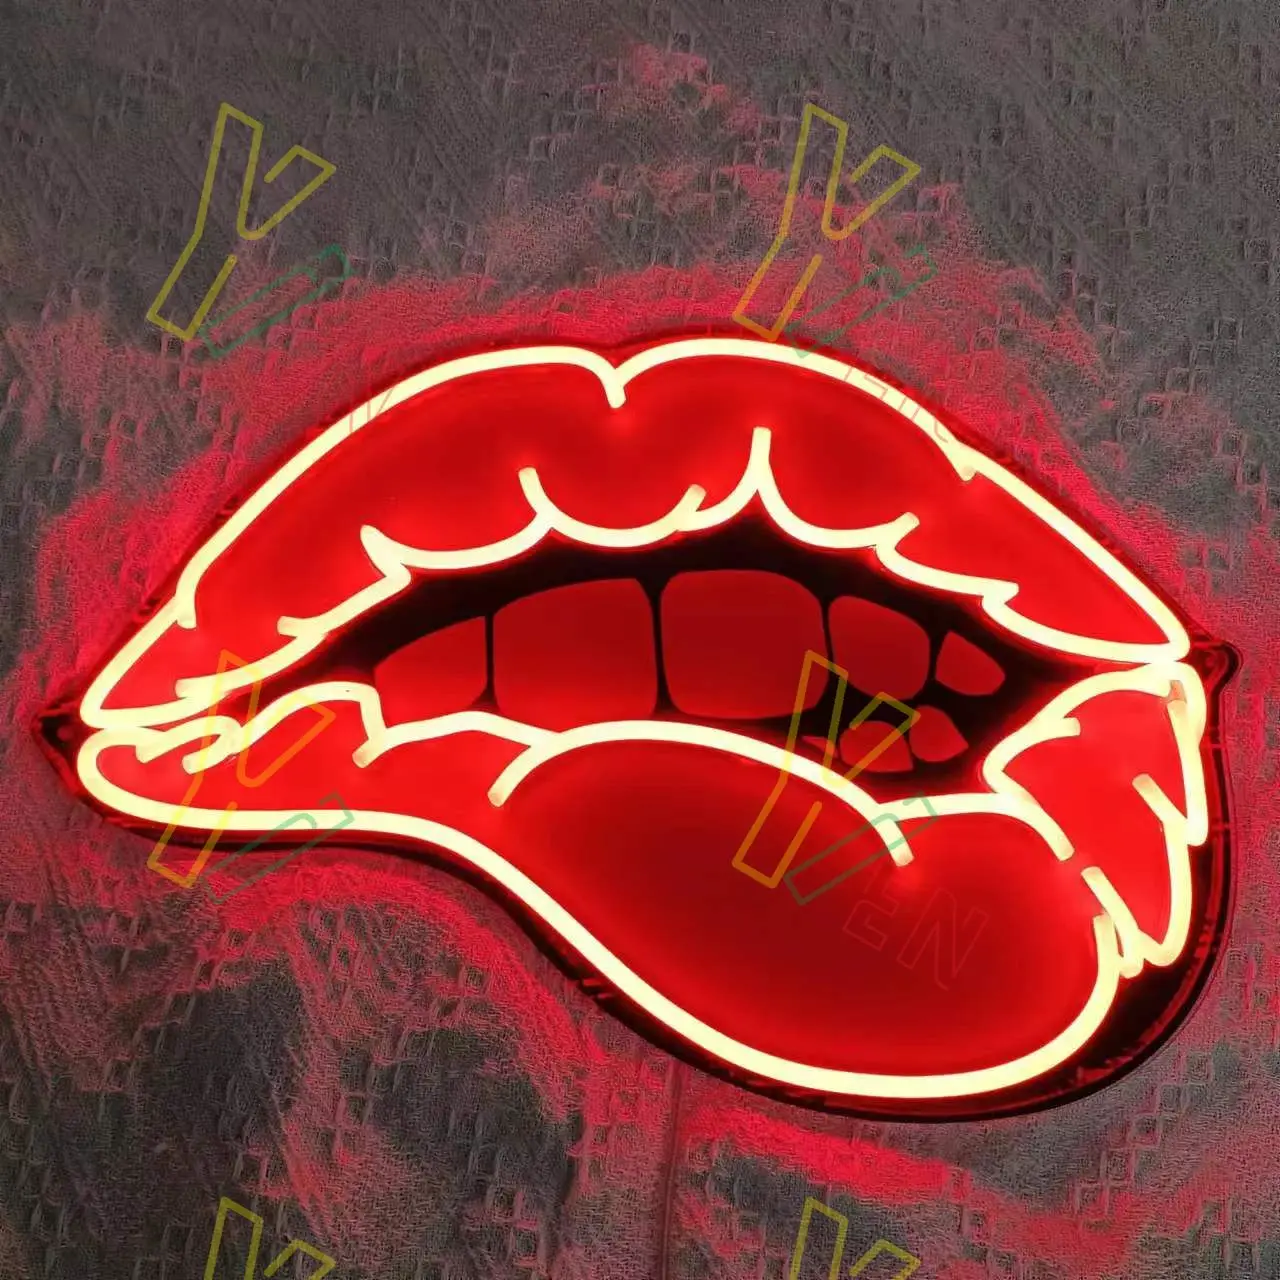 Неоновая Вывеска USB Red Lips, Неоновая Вывеска Sexy Red Lips, Свадебная Неоновая Вывеска, Изготовленная На Заказ Неоновая Вывеска, Неоновая Вывеска 5v, Неоновая Вывеска USB